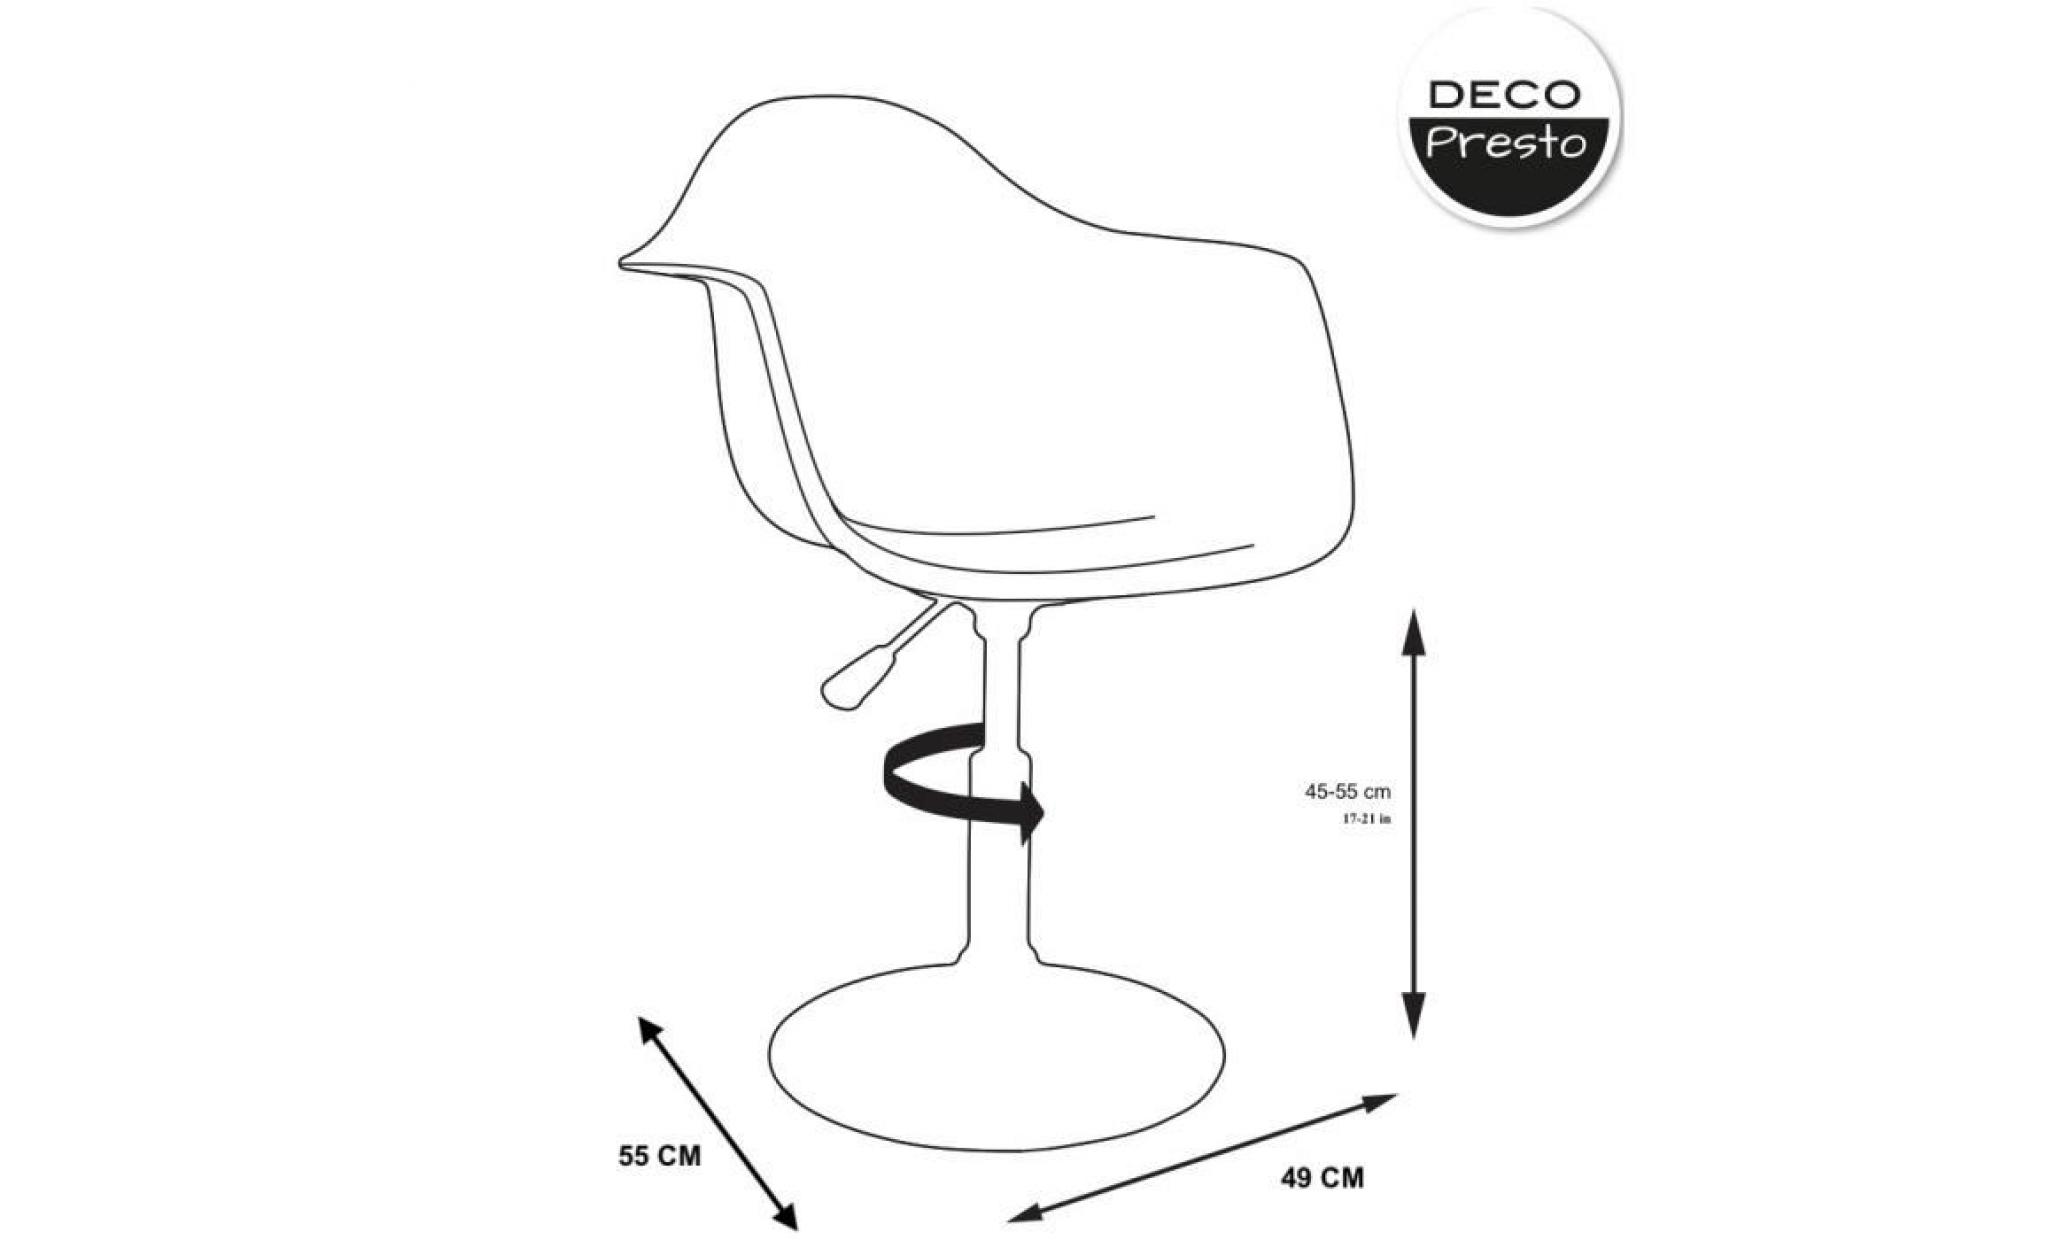 1 x fauteuil design  scandinave reglable pivotant  moutarde pieds: acier chrome decopresto dp dai mu 1 pas cher